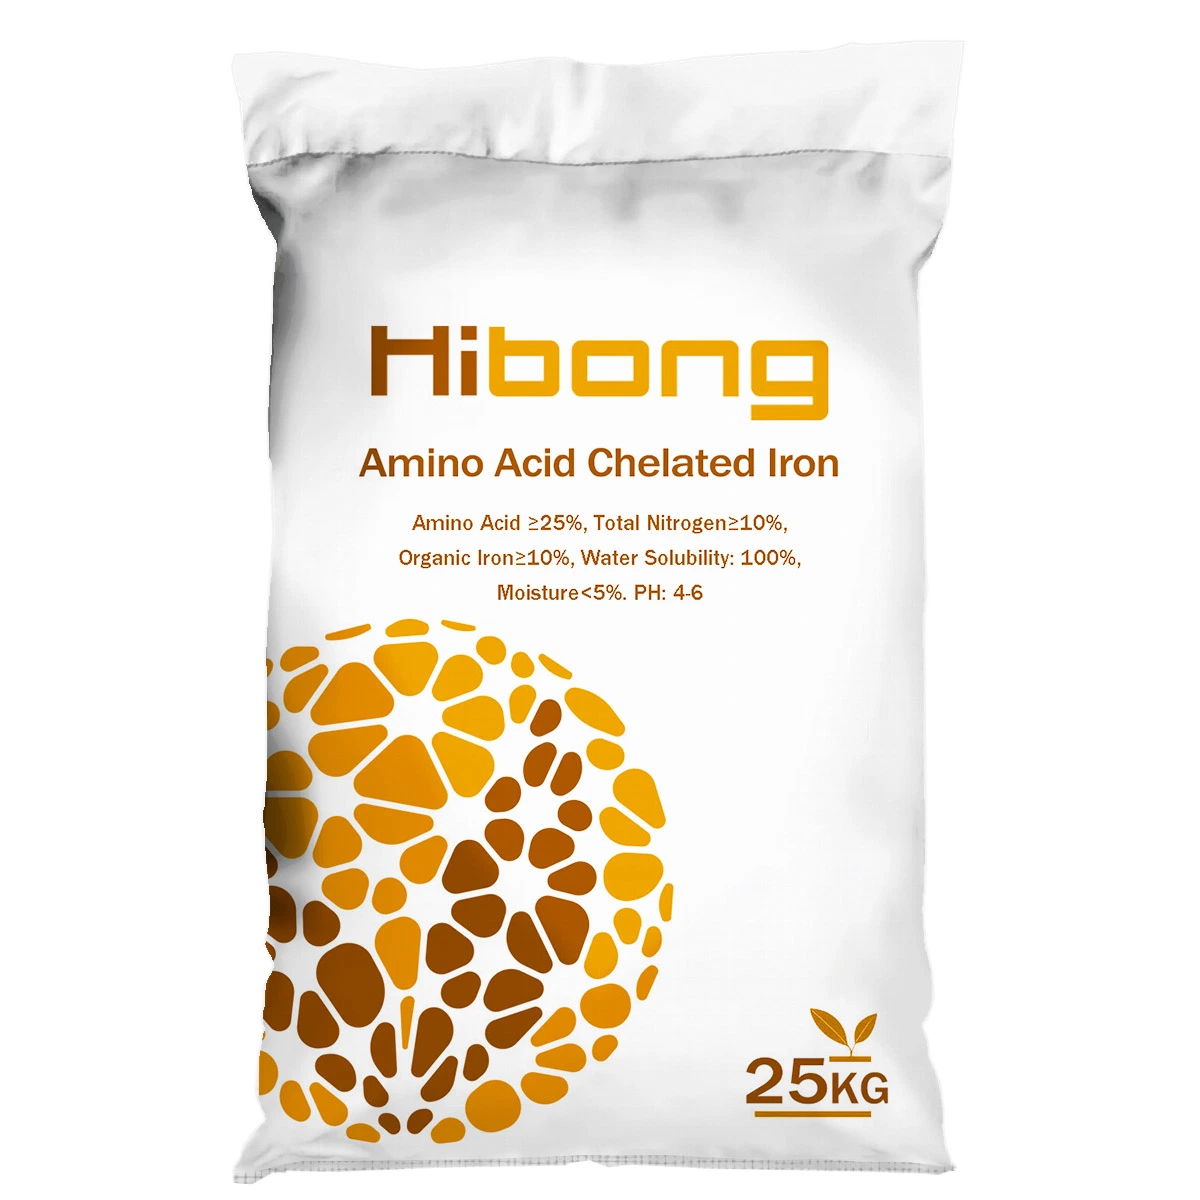 Hibong Agriculture Amino Acid Chelated Iron Organic Fertilizer